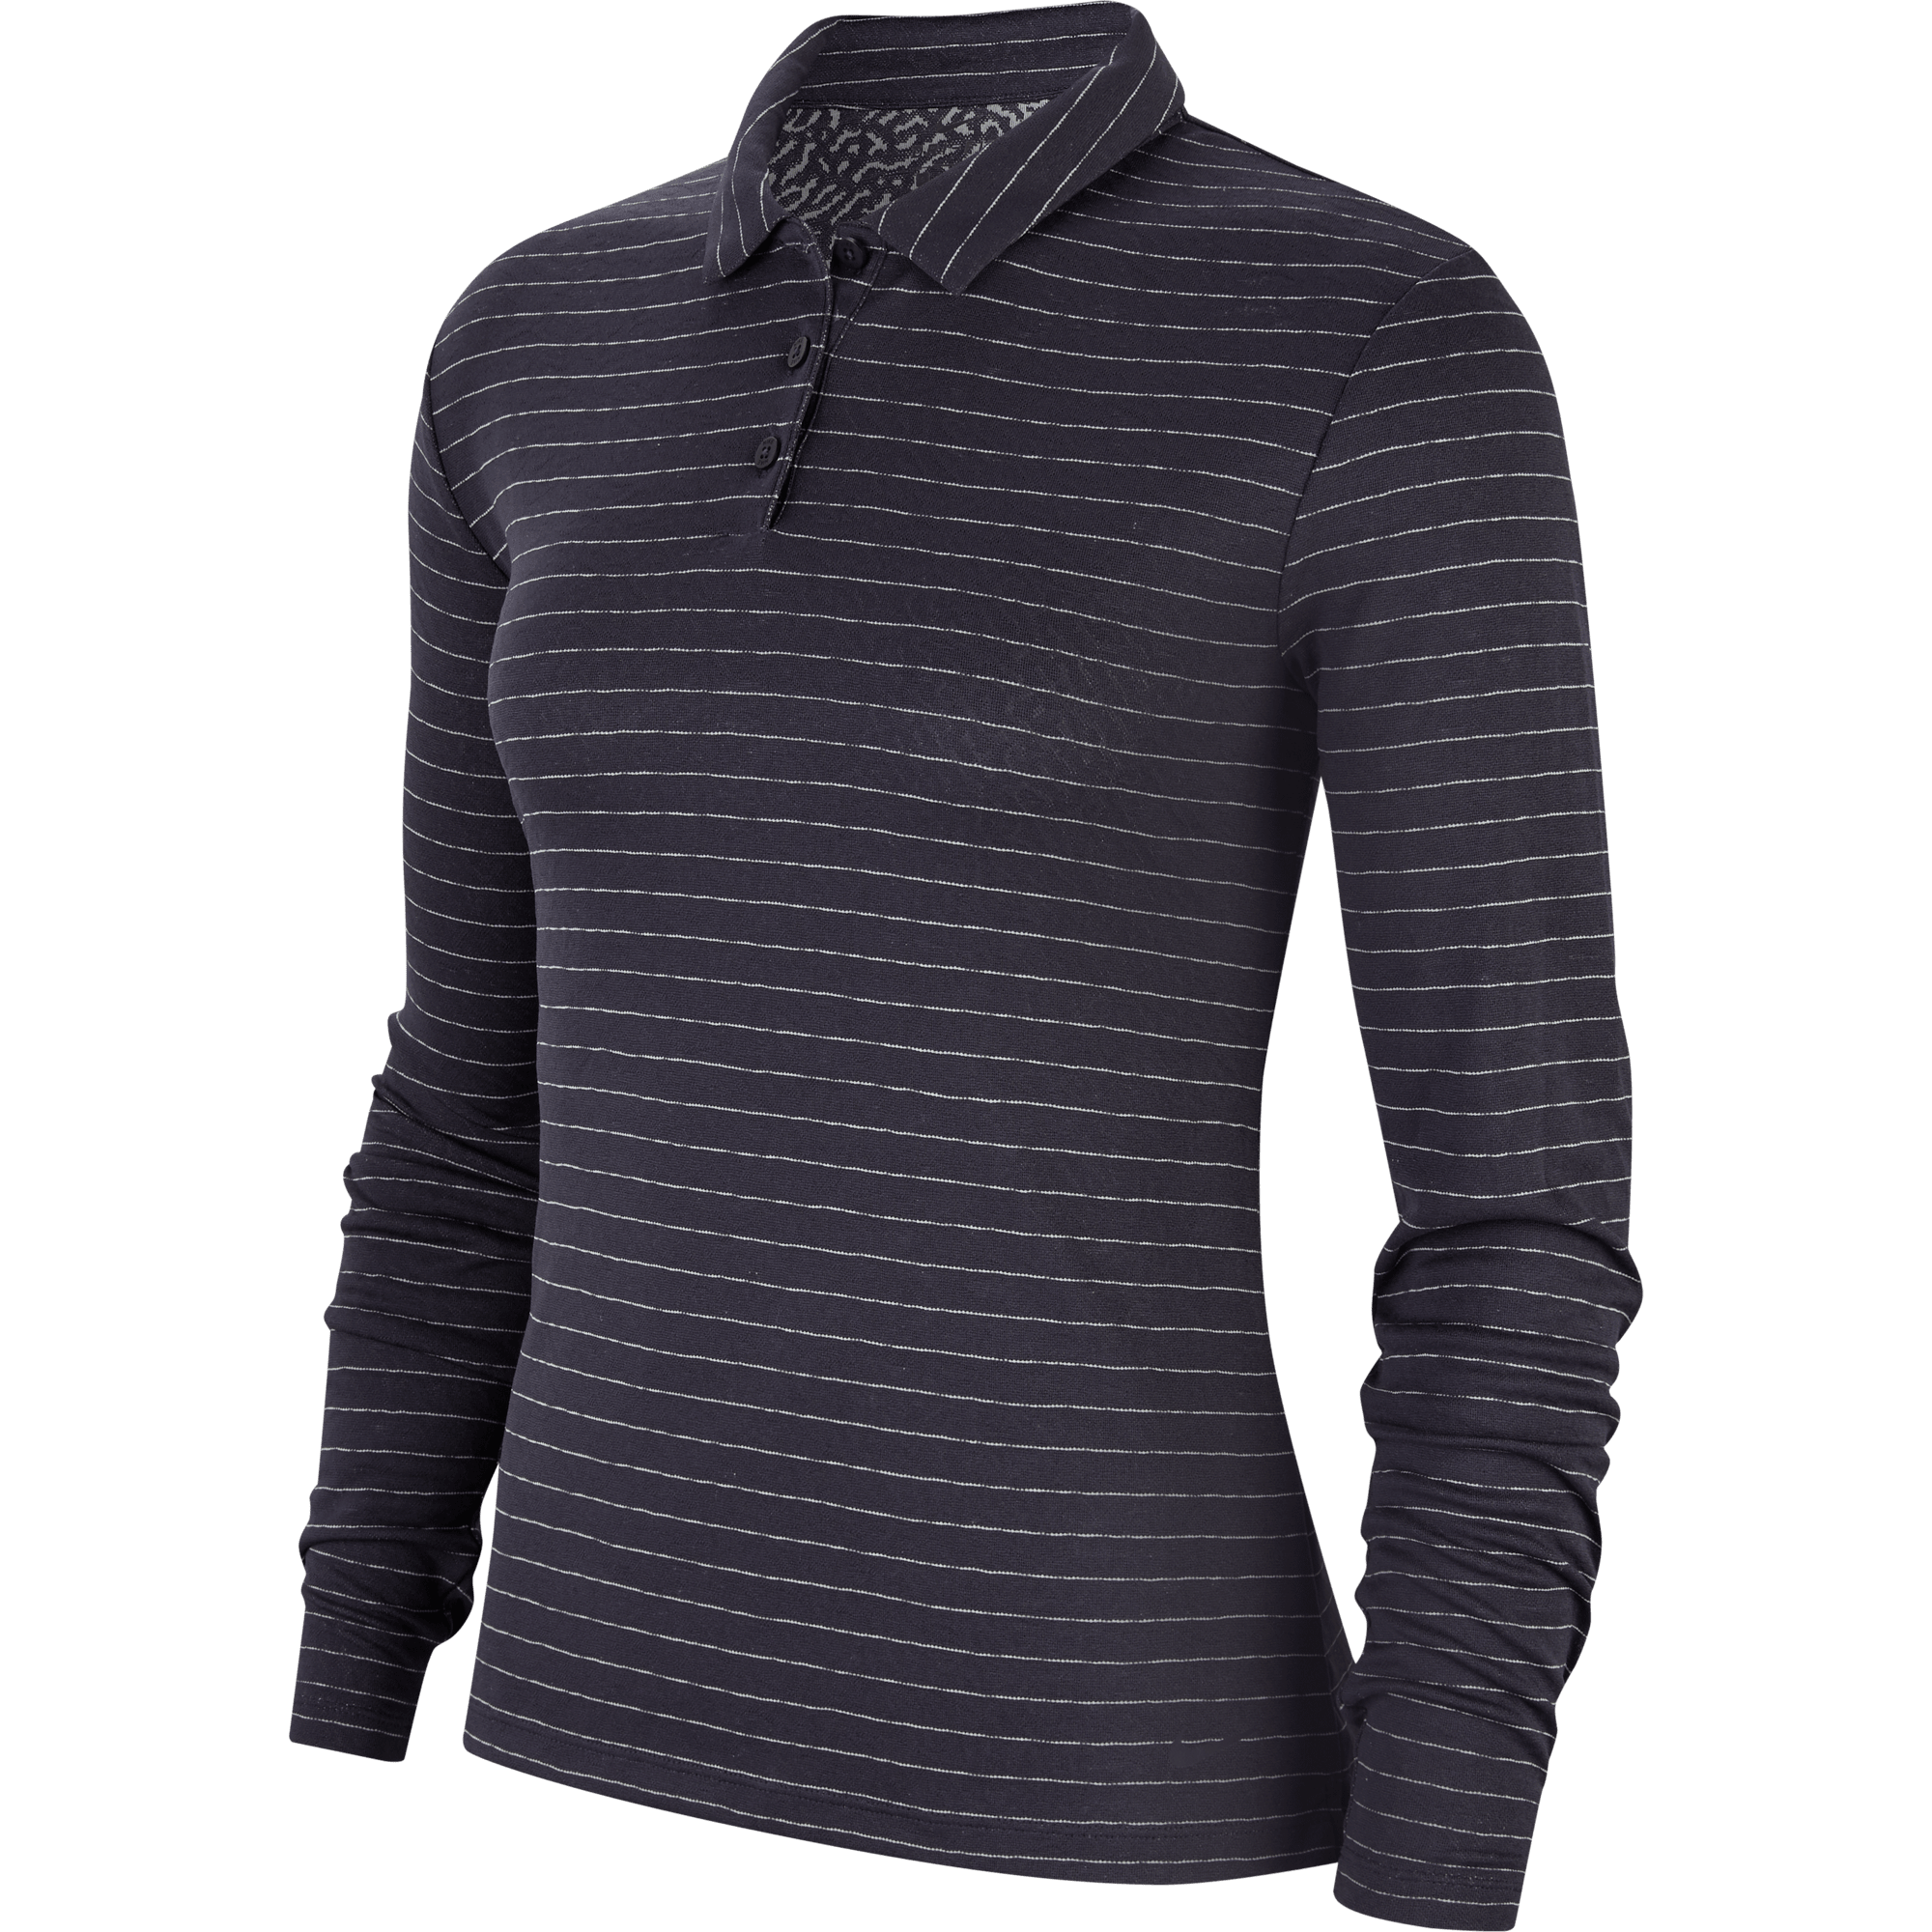 women's golf shirts long sleeve